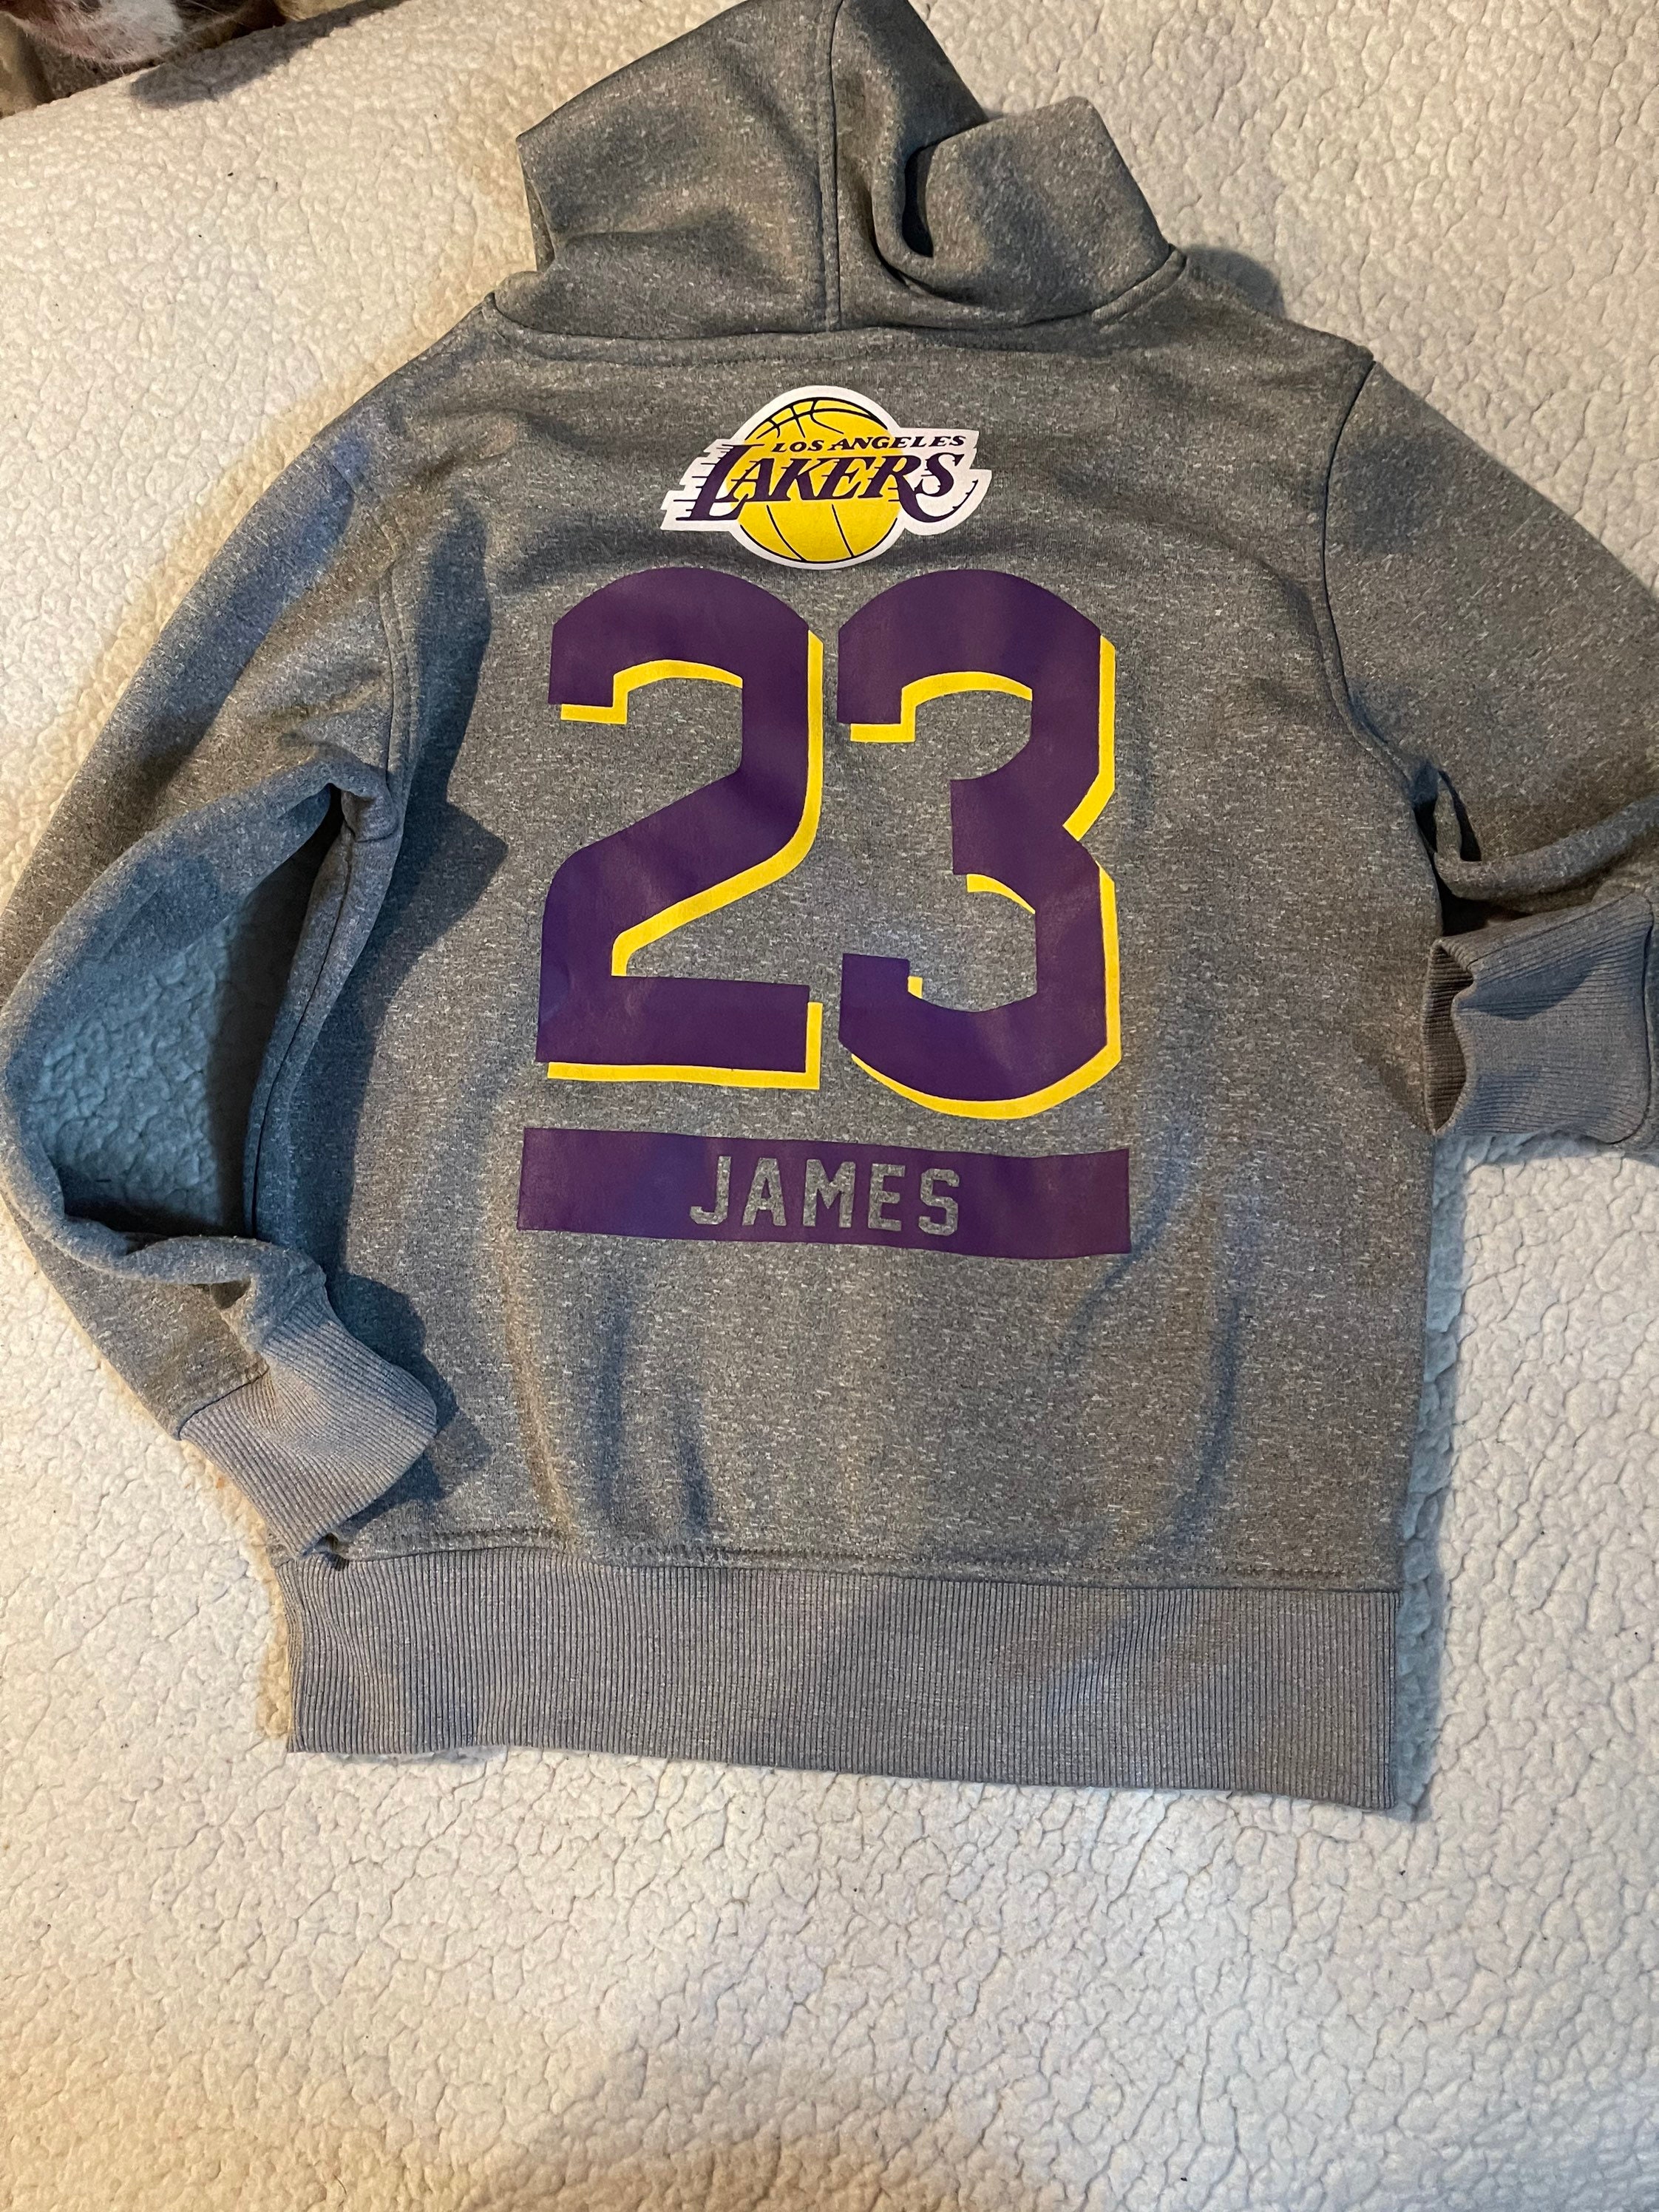 23 Lebron James Lakers Jersey Inspired Style Fleece Bomber Jacket